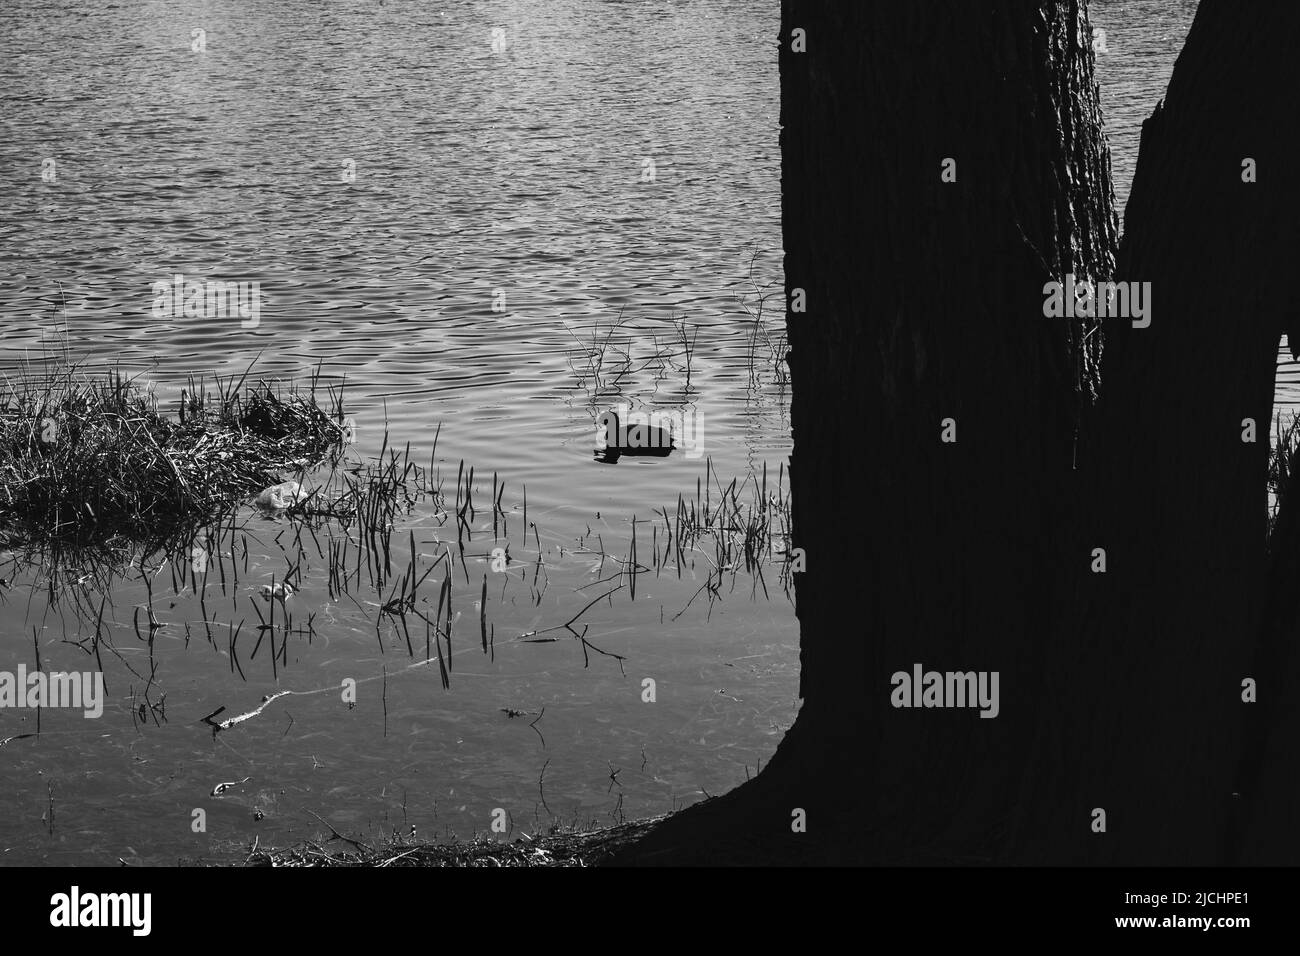 Silhouette de canard sauvage. Un canard nageant dans un lac lors d'une chaude journée de printemps. Banque D'Images